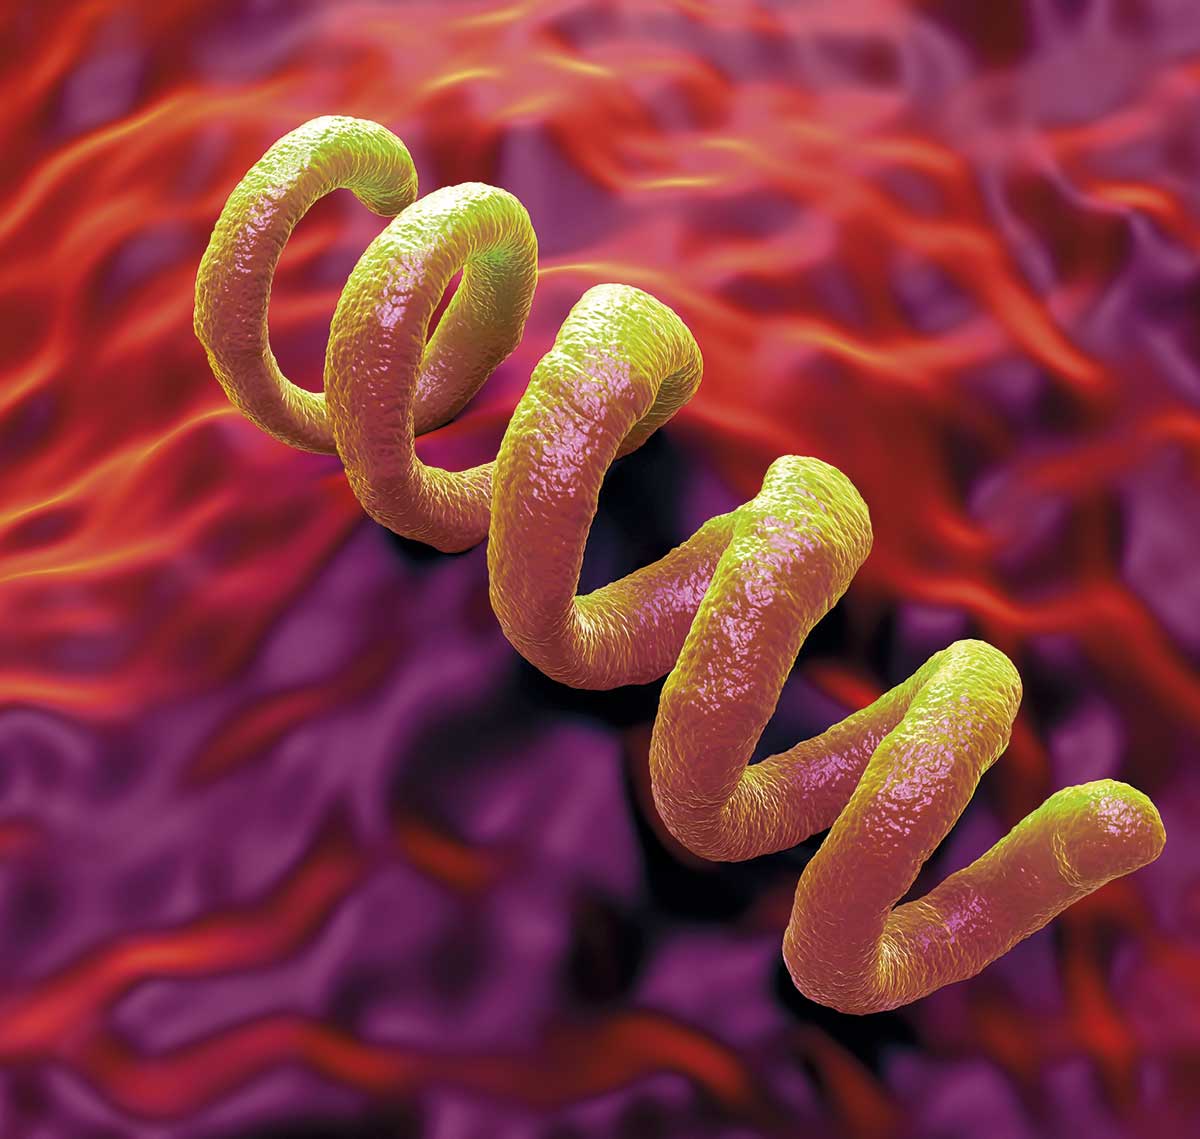 Bakterien som orsakar syfilis är en spiroket, namnet kommer från den spiralliknande formen.